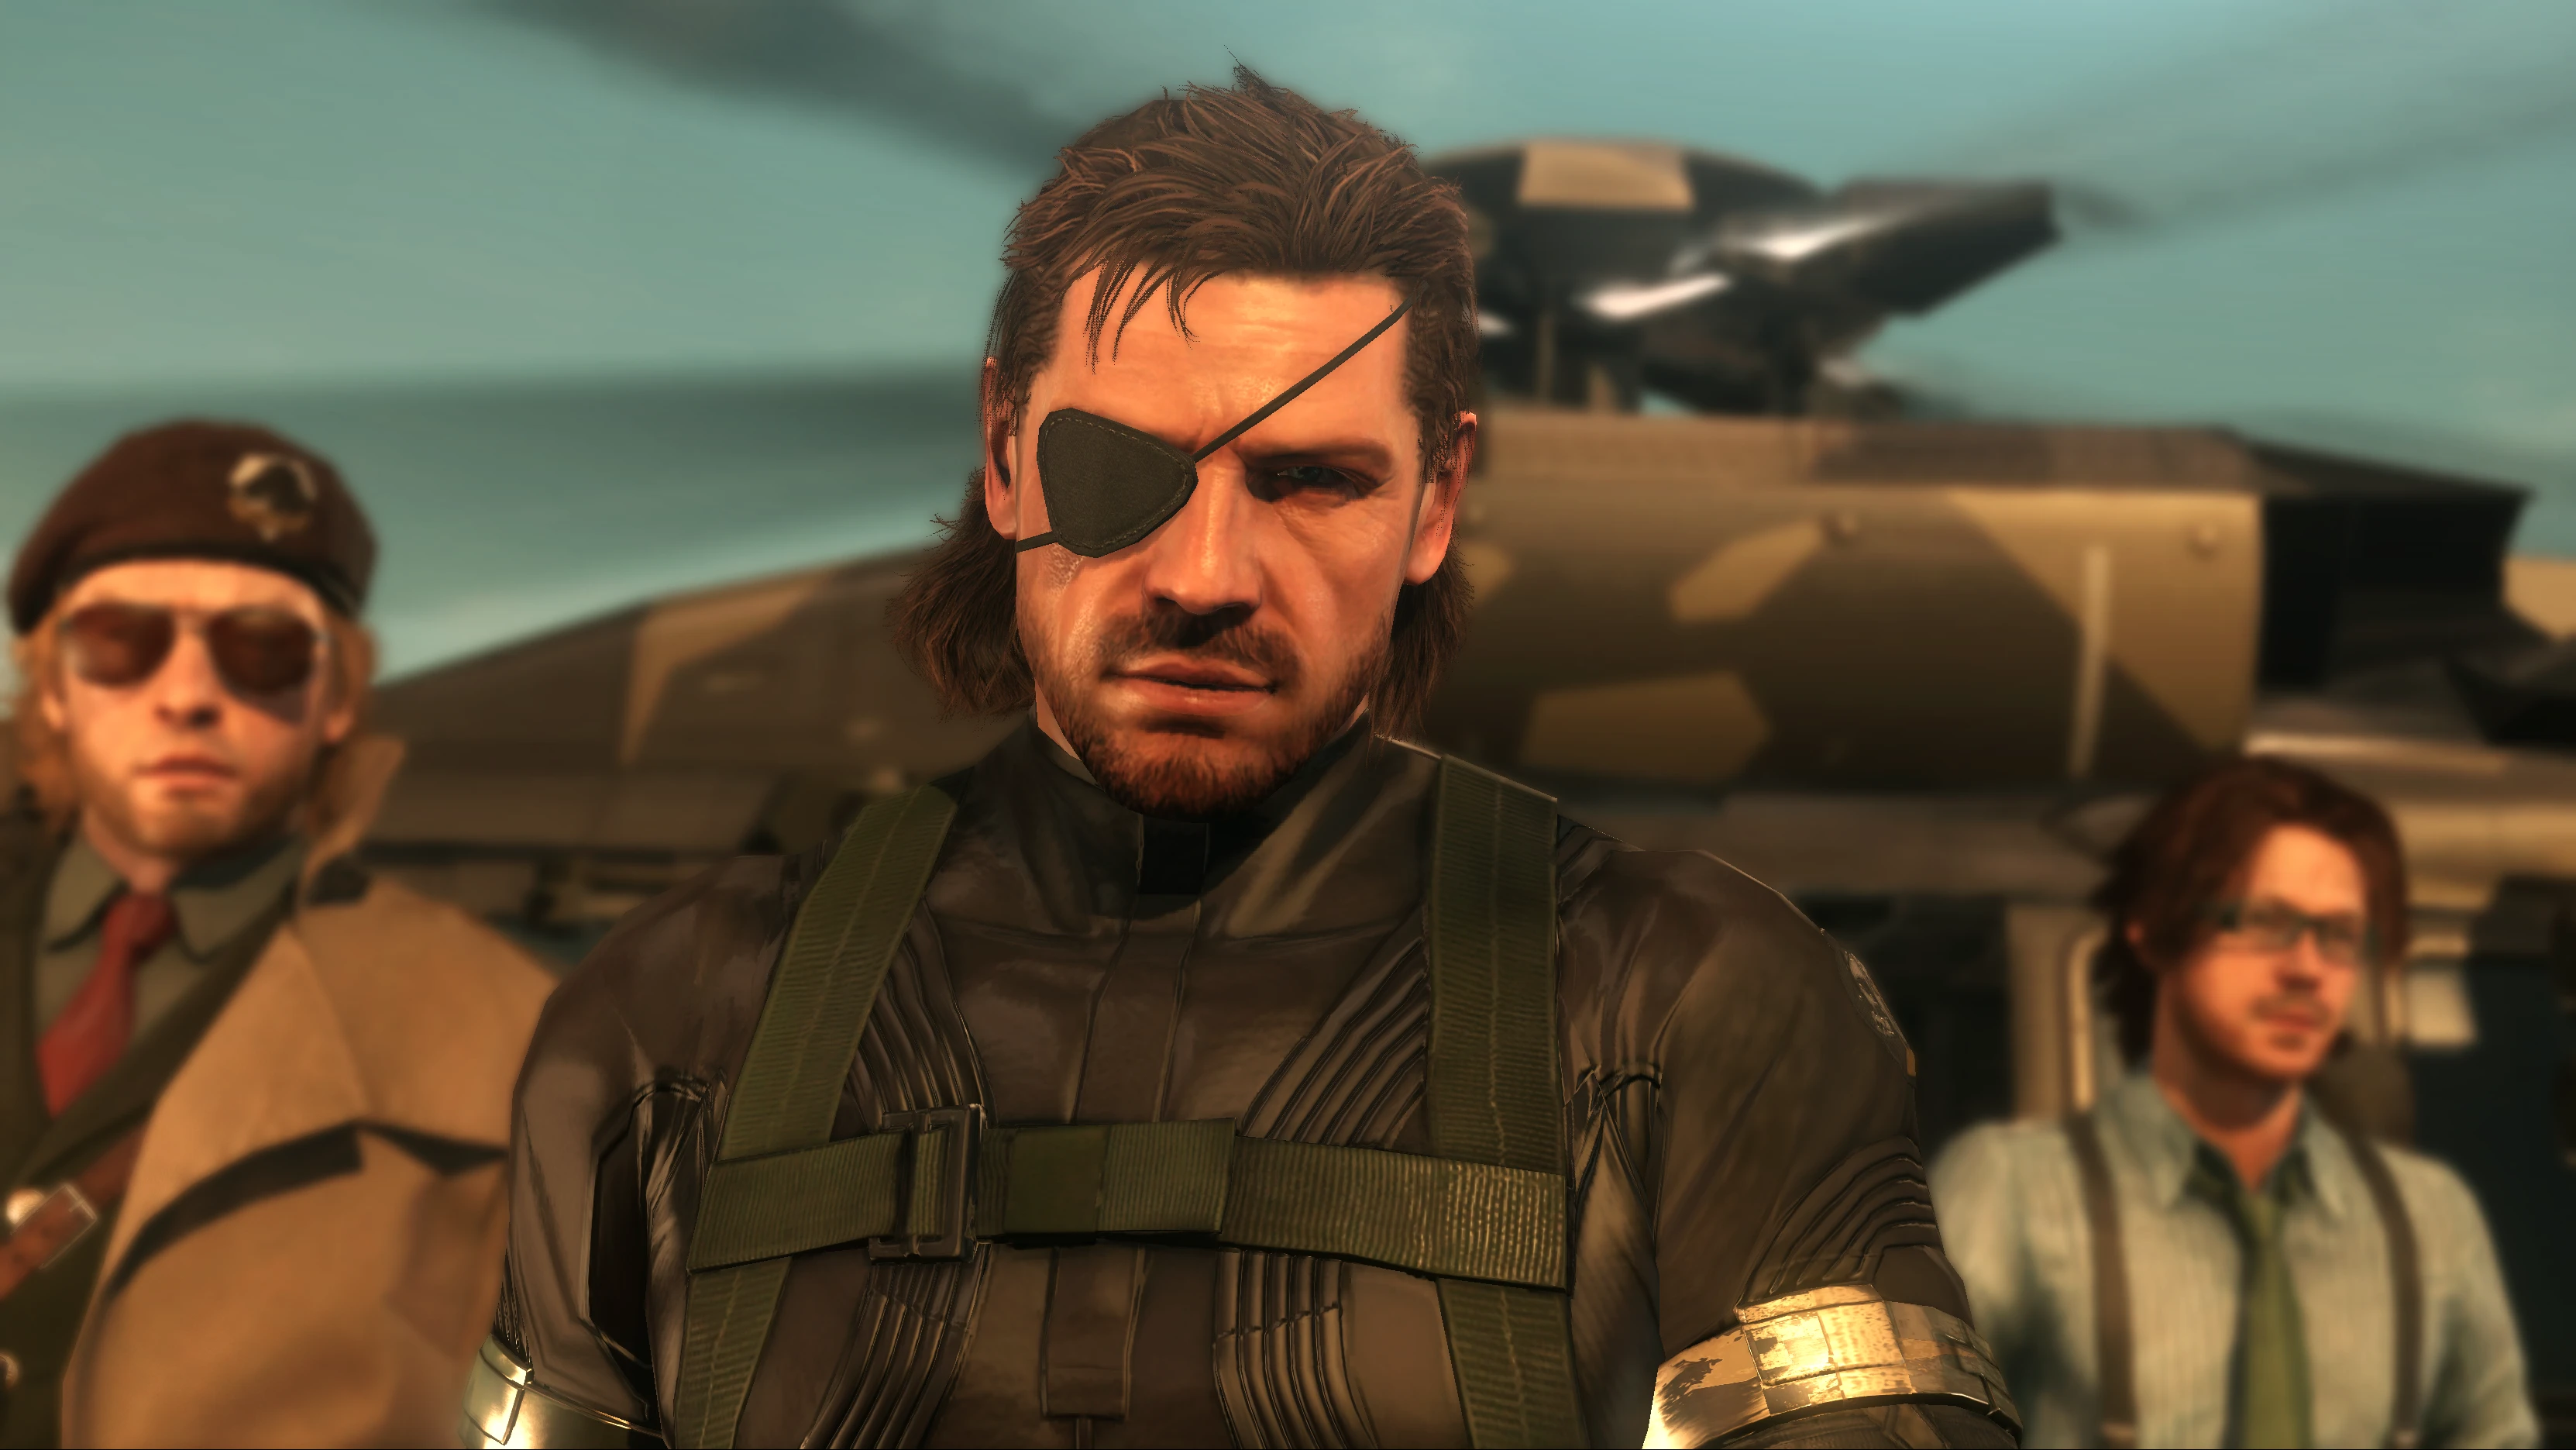 Boss 1.16 5. Big Boss MGS 5. Биг босс Metal Gear Solid 5. MGS 5 the Phantom Pain.